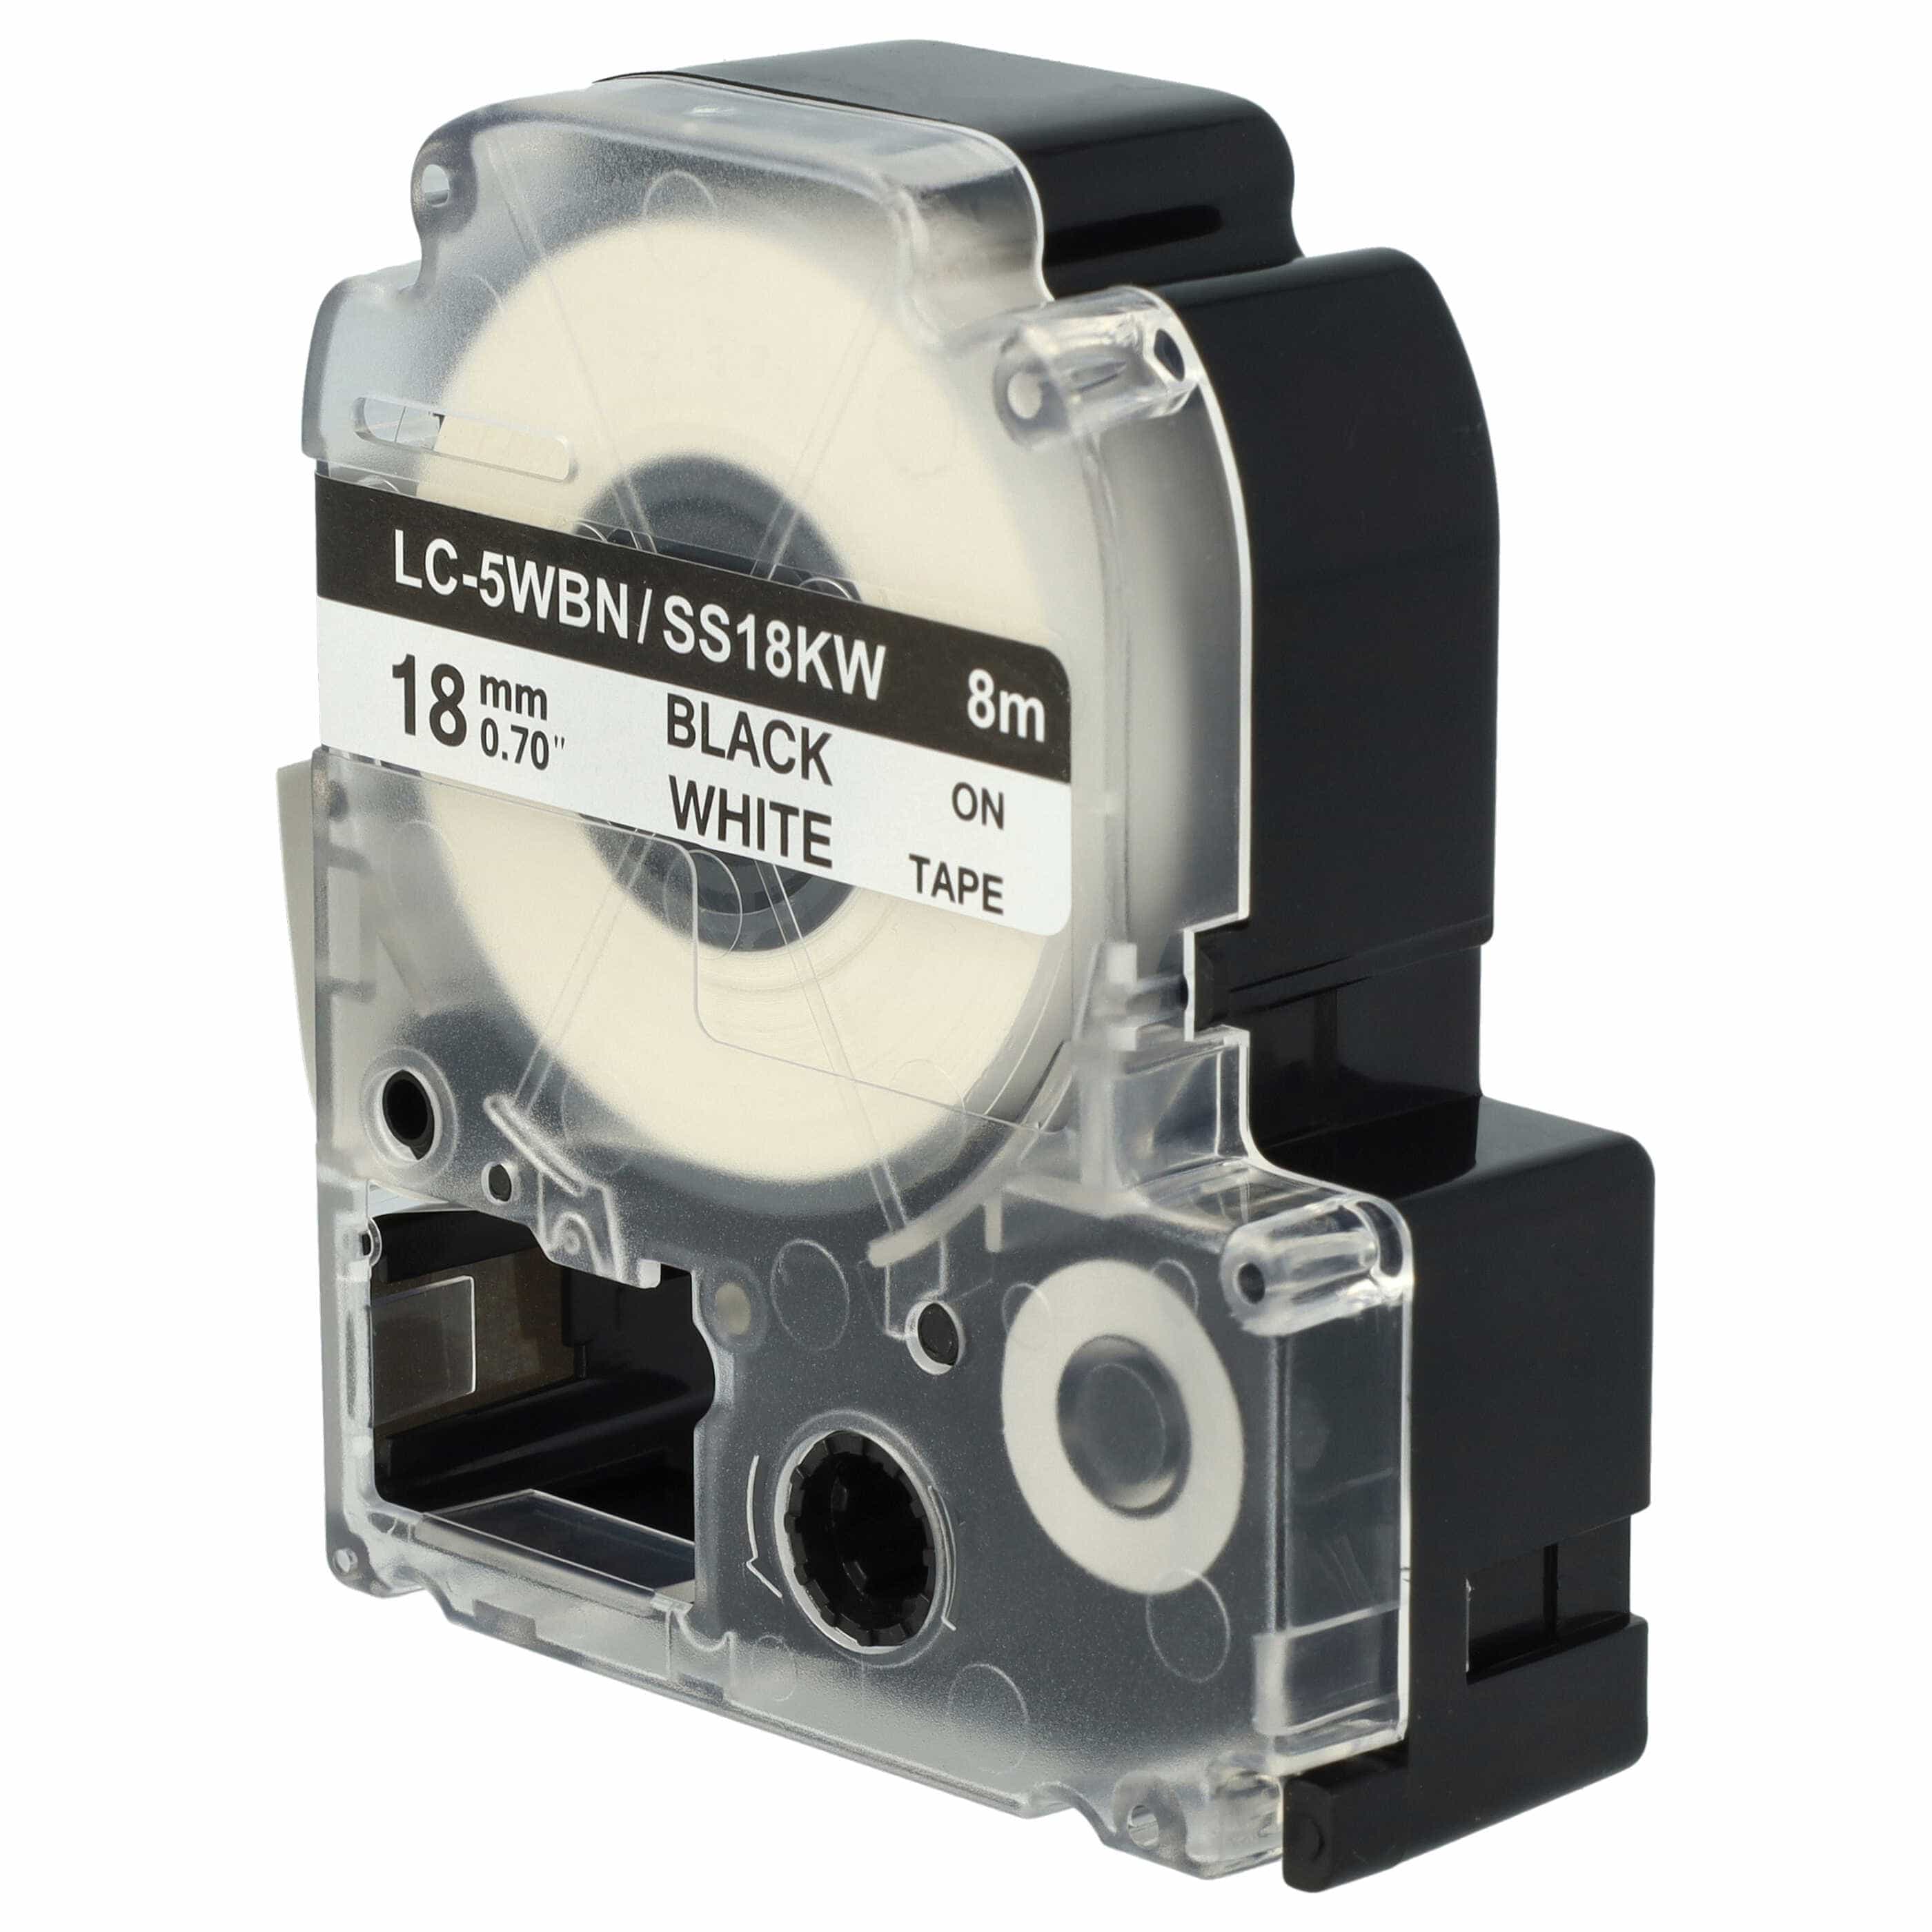 5x Cassettes à ruban remplacent Epson SS18KW, LC-5WBN - 18mm lettrage Noir ruban Blanc